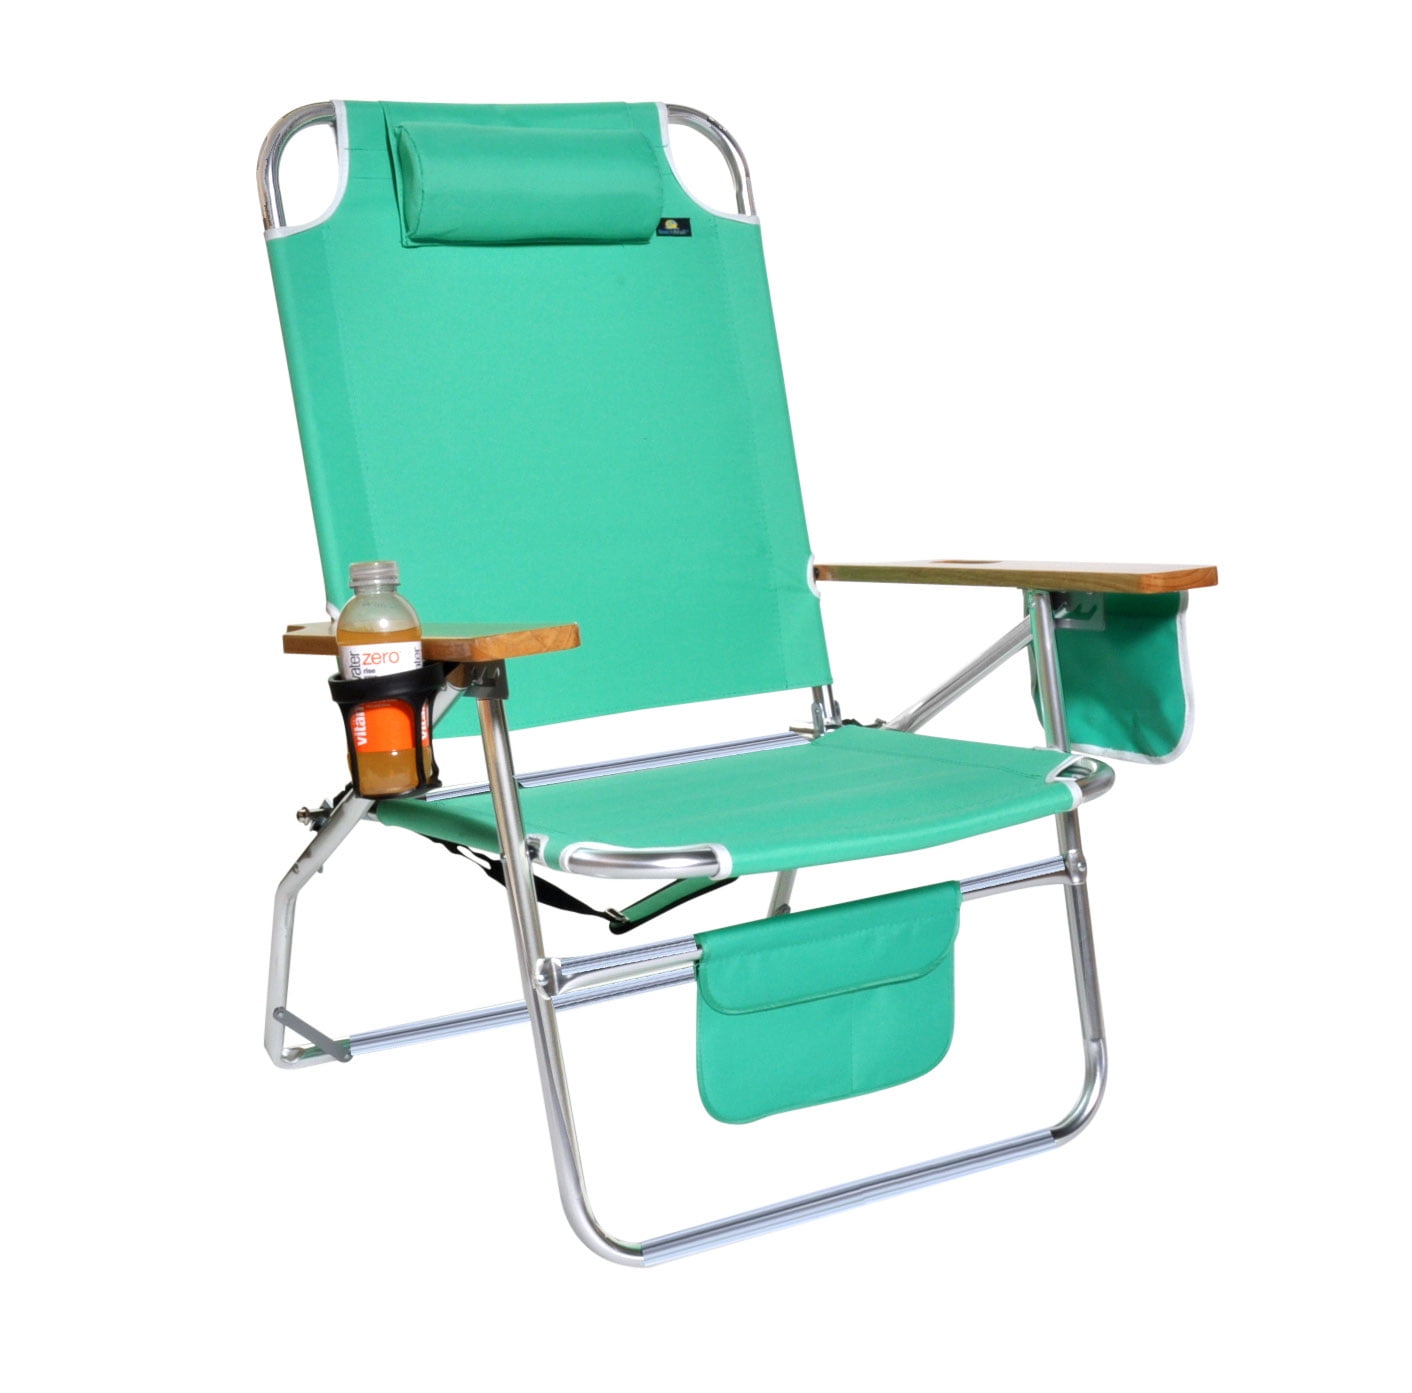 Creatice Big Jumbo Heavy Duty Beach Chair with Simple Decor